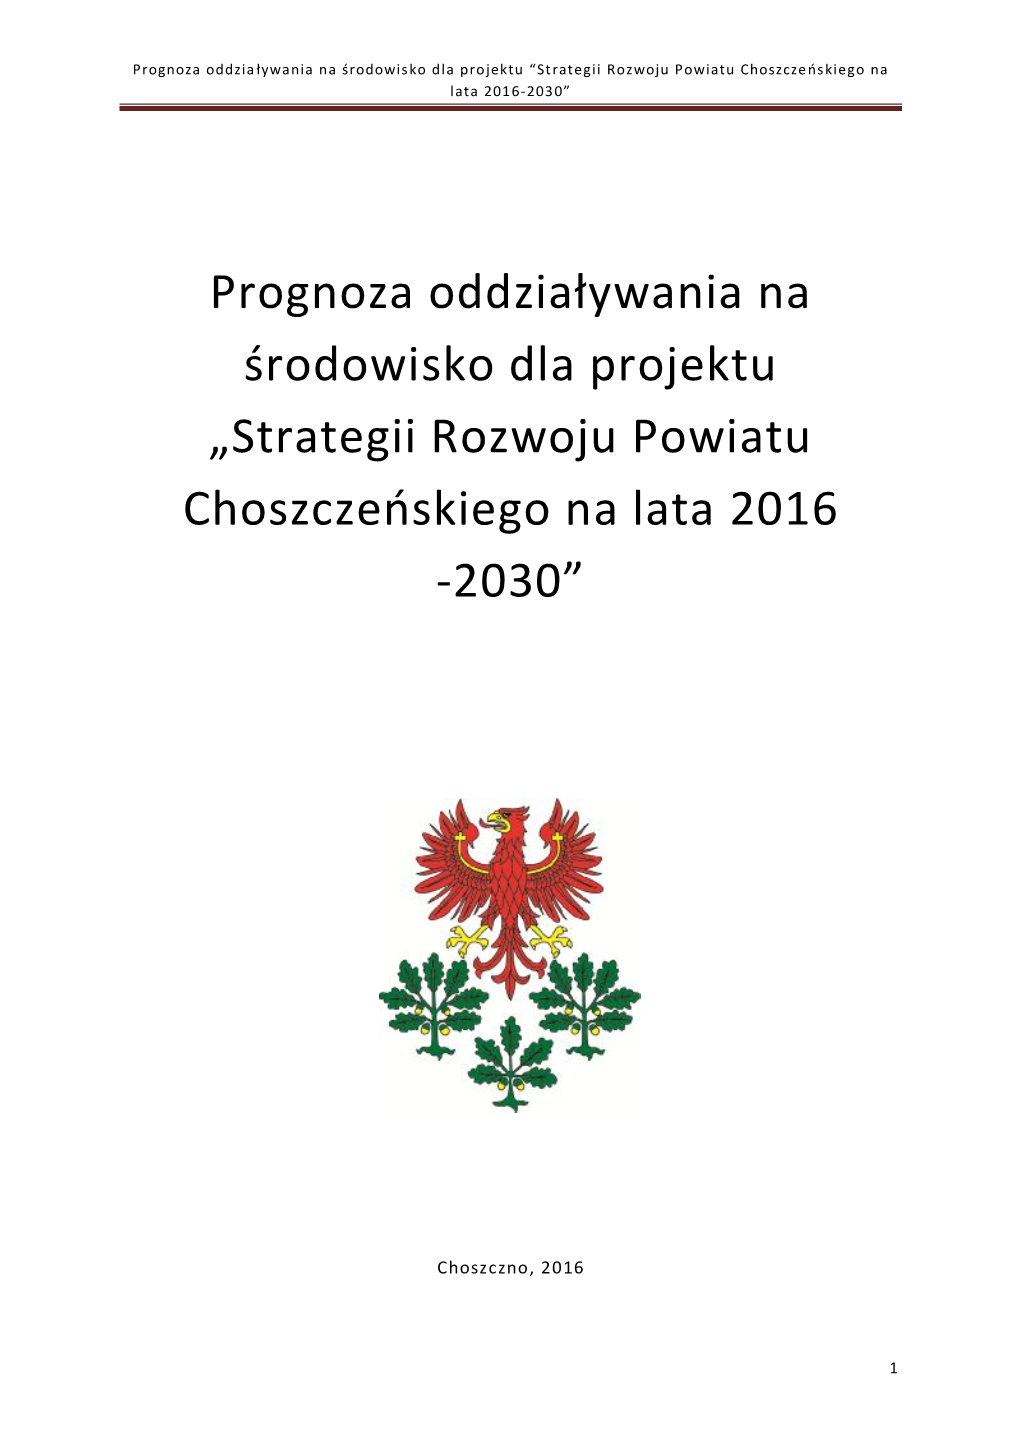 Strategii Rozwoju Powiatu Choszczeńskiego Na Lata 2016 -2030”